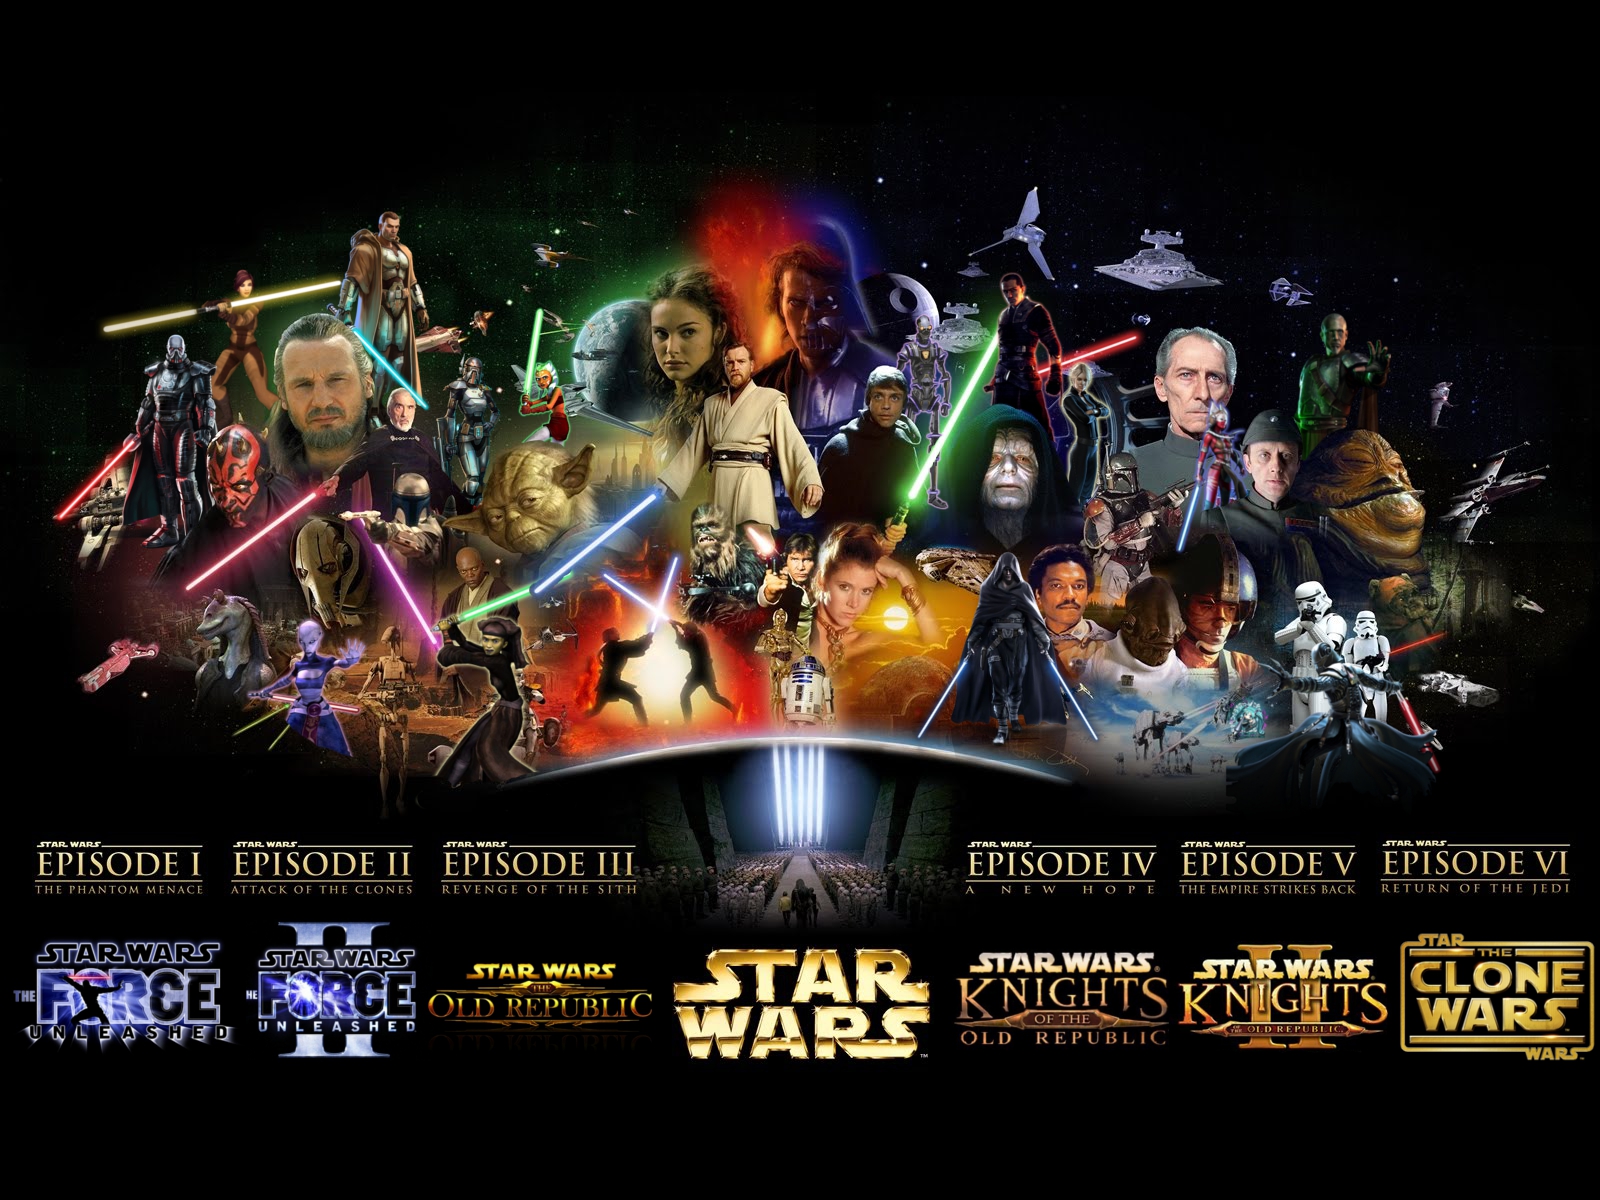 Star wars background wallpaper